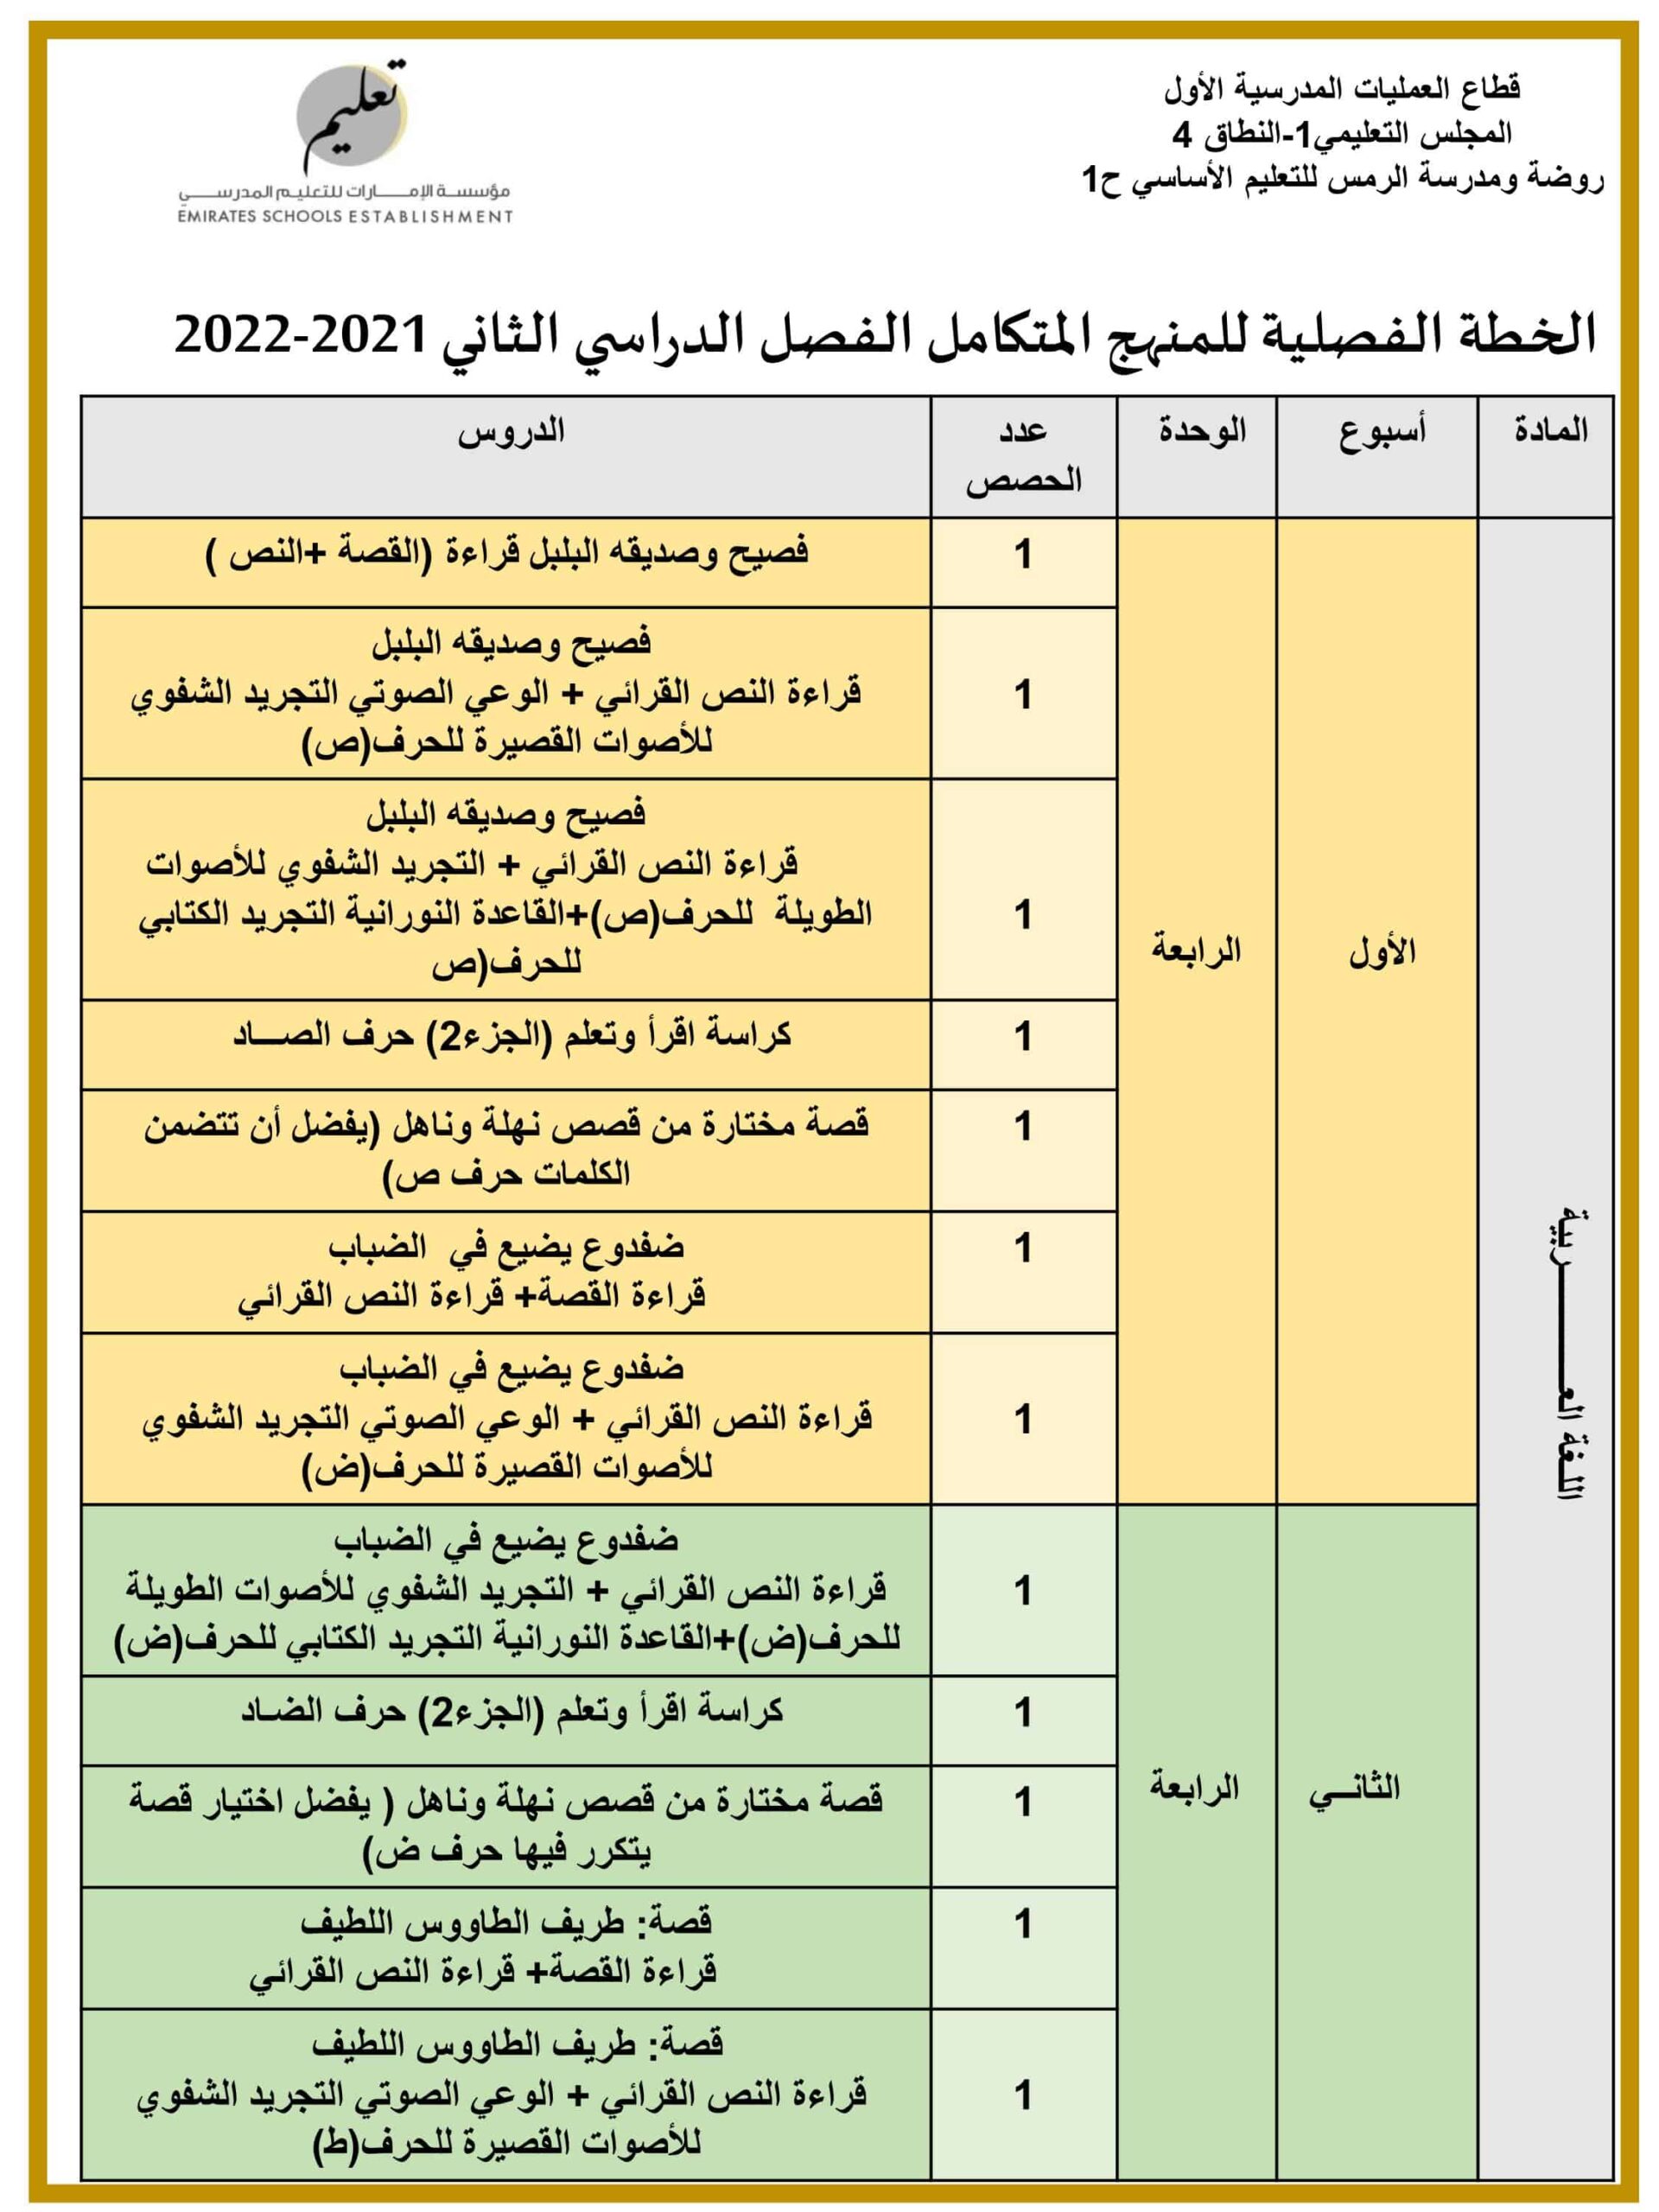 الخطة الفصلية اللغة العربية المنهج المتكامل الصف الأول الفصل الدراسي الثاني 2021- 2022